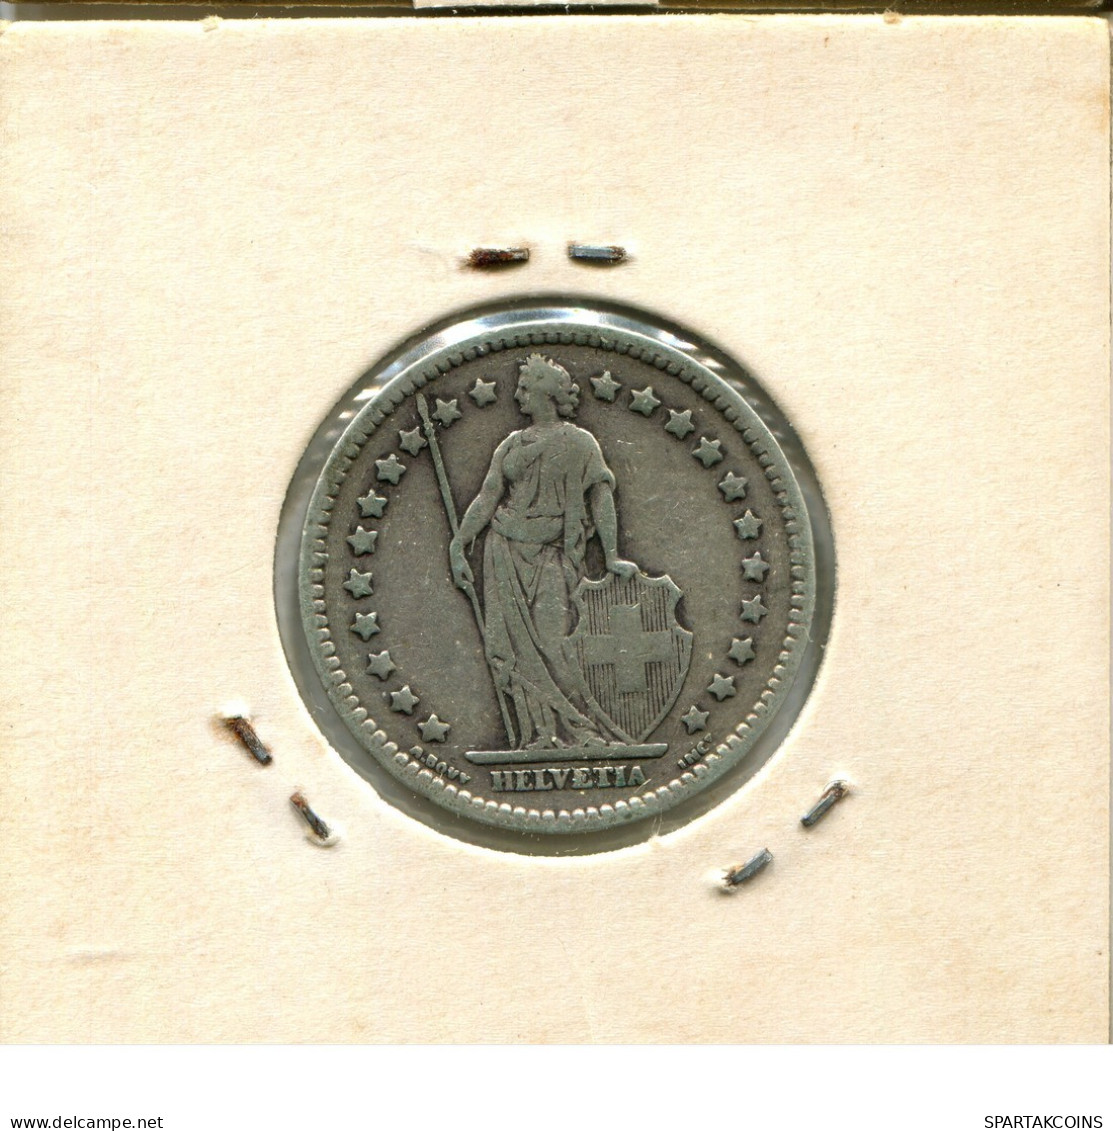 1 FRANC 1914 B SWITZERLAND Coin SILVER #AY042.3.U.A - Sonstige & Ohne Zuordnung